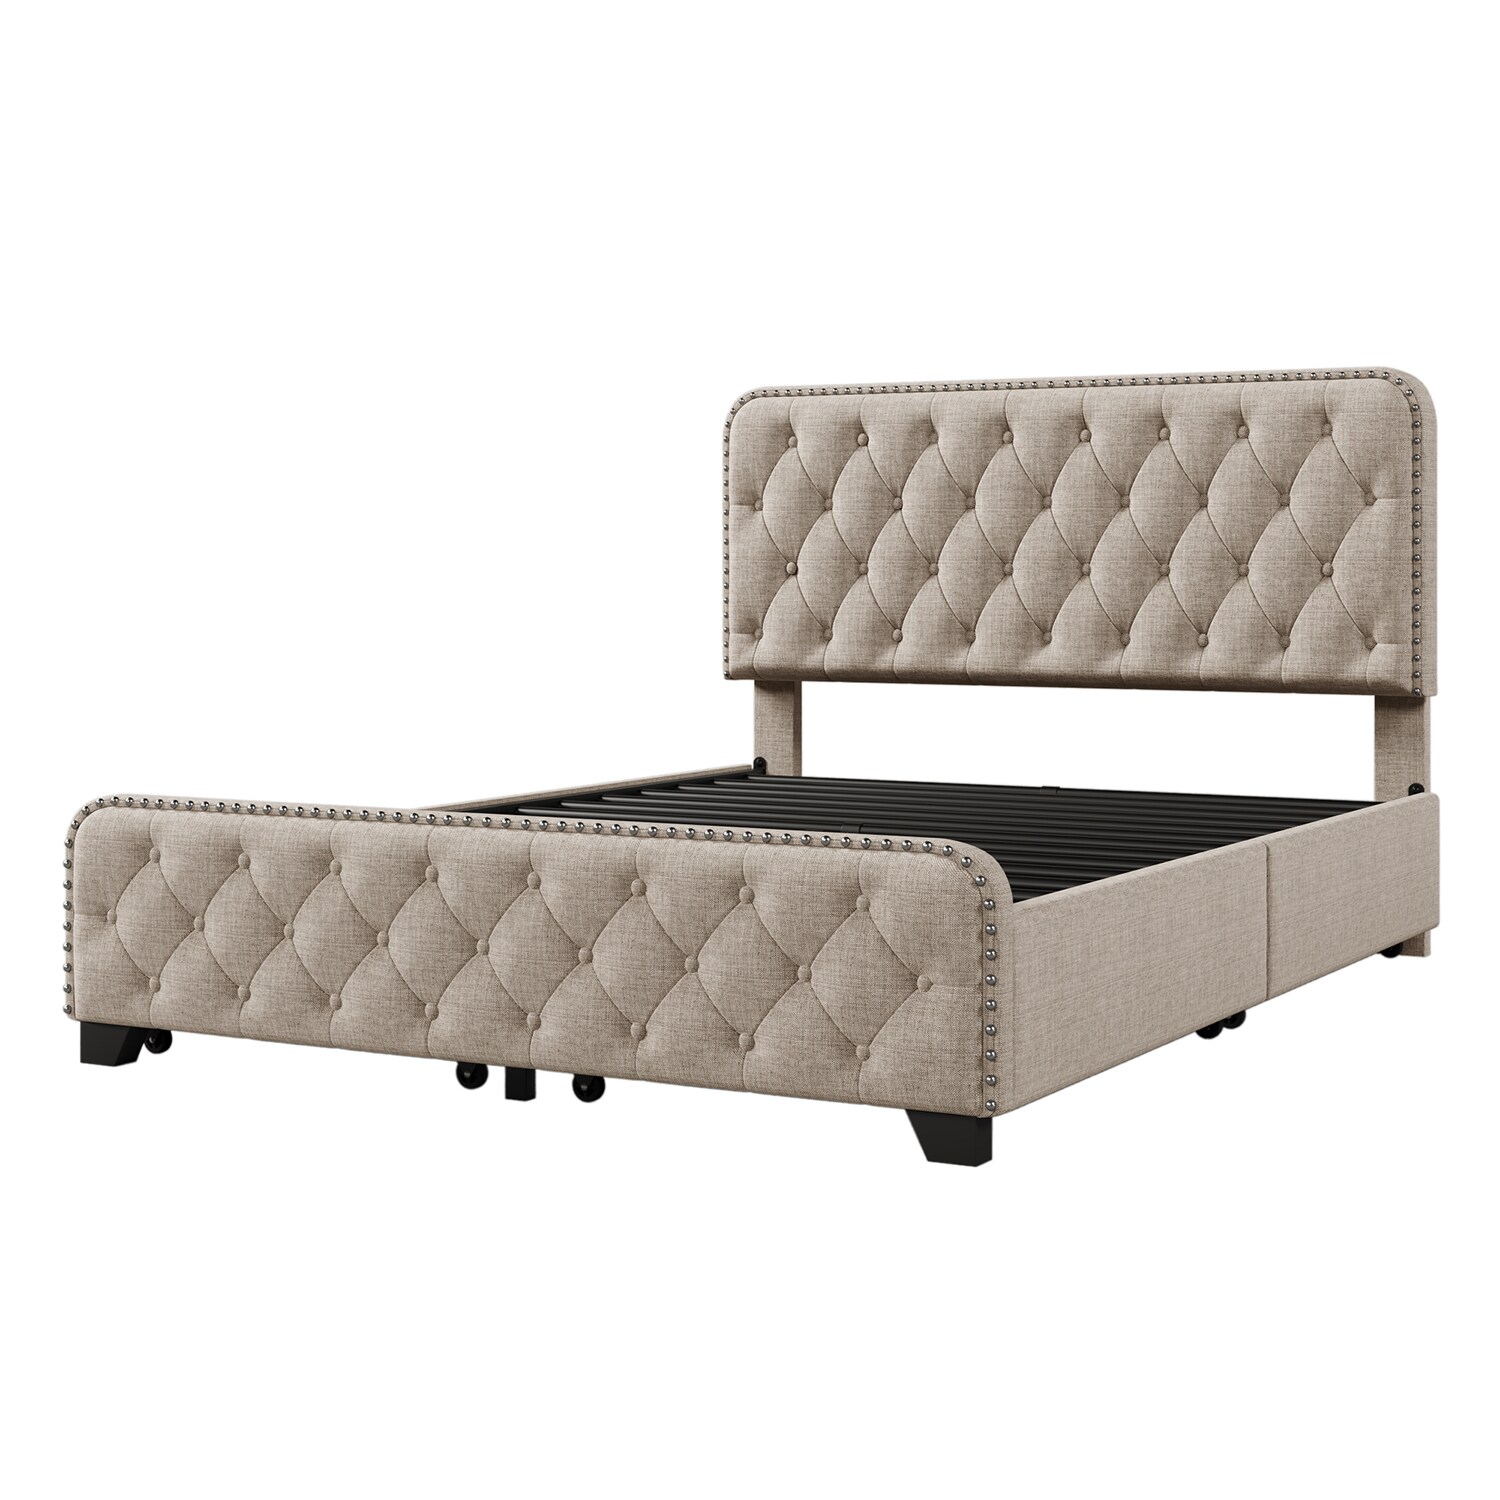 GZMR Upholstered Platform Bed Frame Beige Full Metal Bed Frame with ...